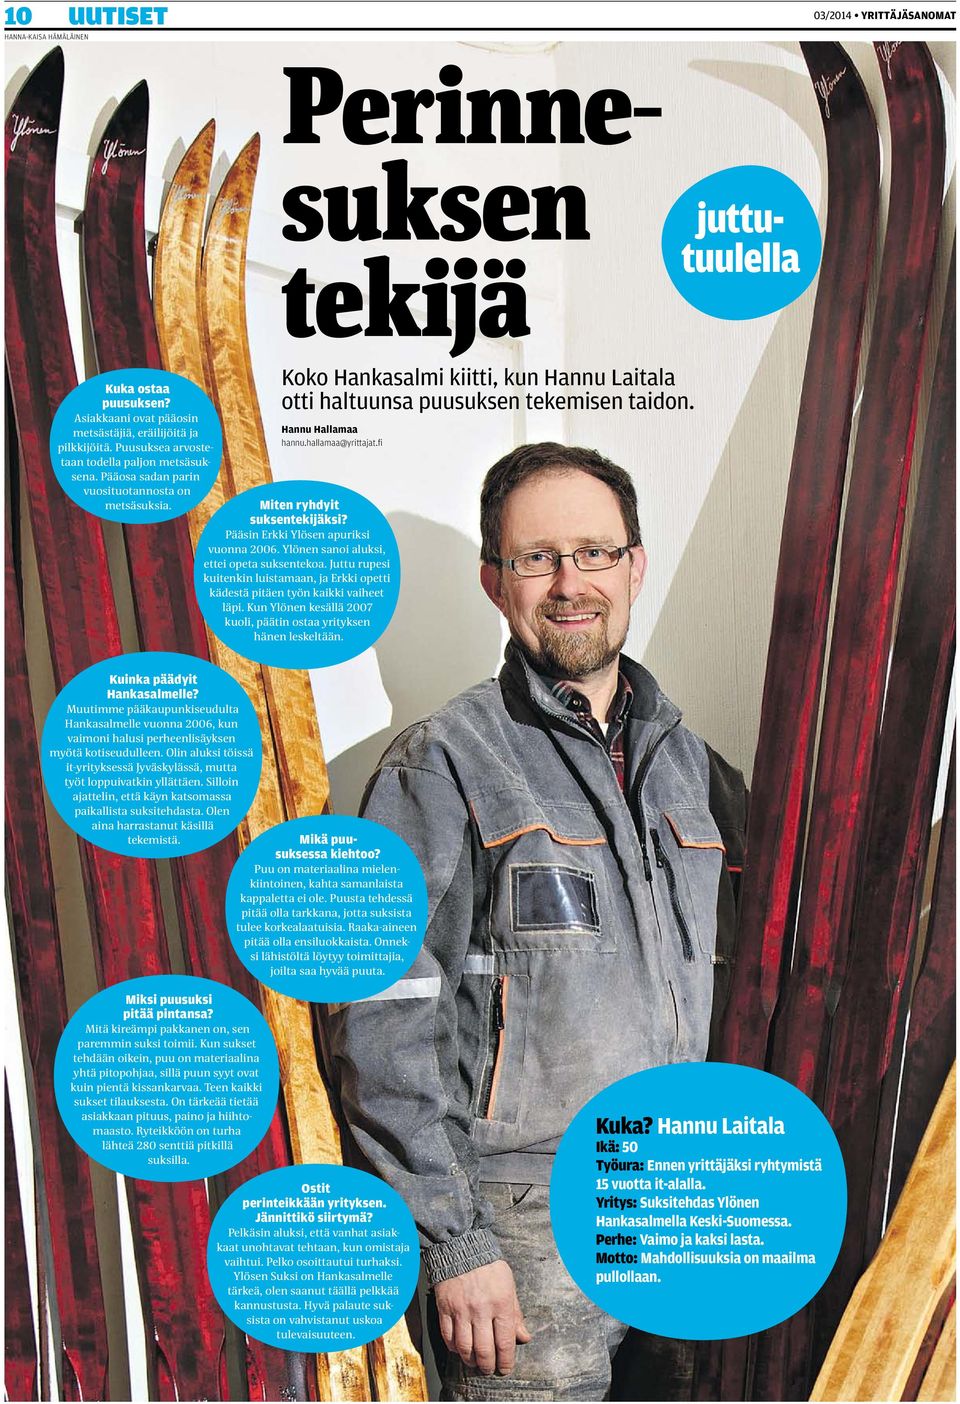 Hannu Hallamaa hannu.hallamaa@yrittajat.fi Miten ryhdyit suksentekijäksi? Pääsin Erkki Ylösen apuriksi vuonna 2006. Ylönen sanoi aluksi, ettei opeta suksentekoa.